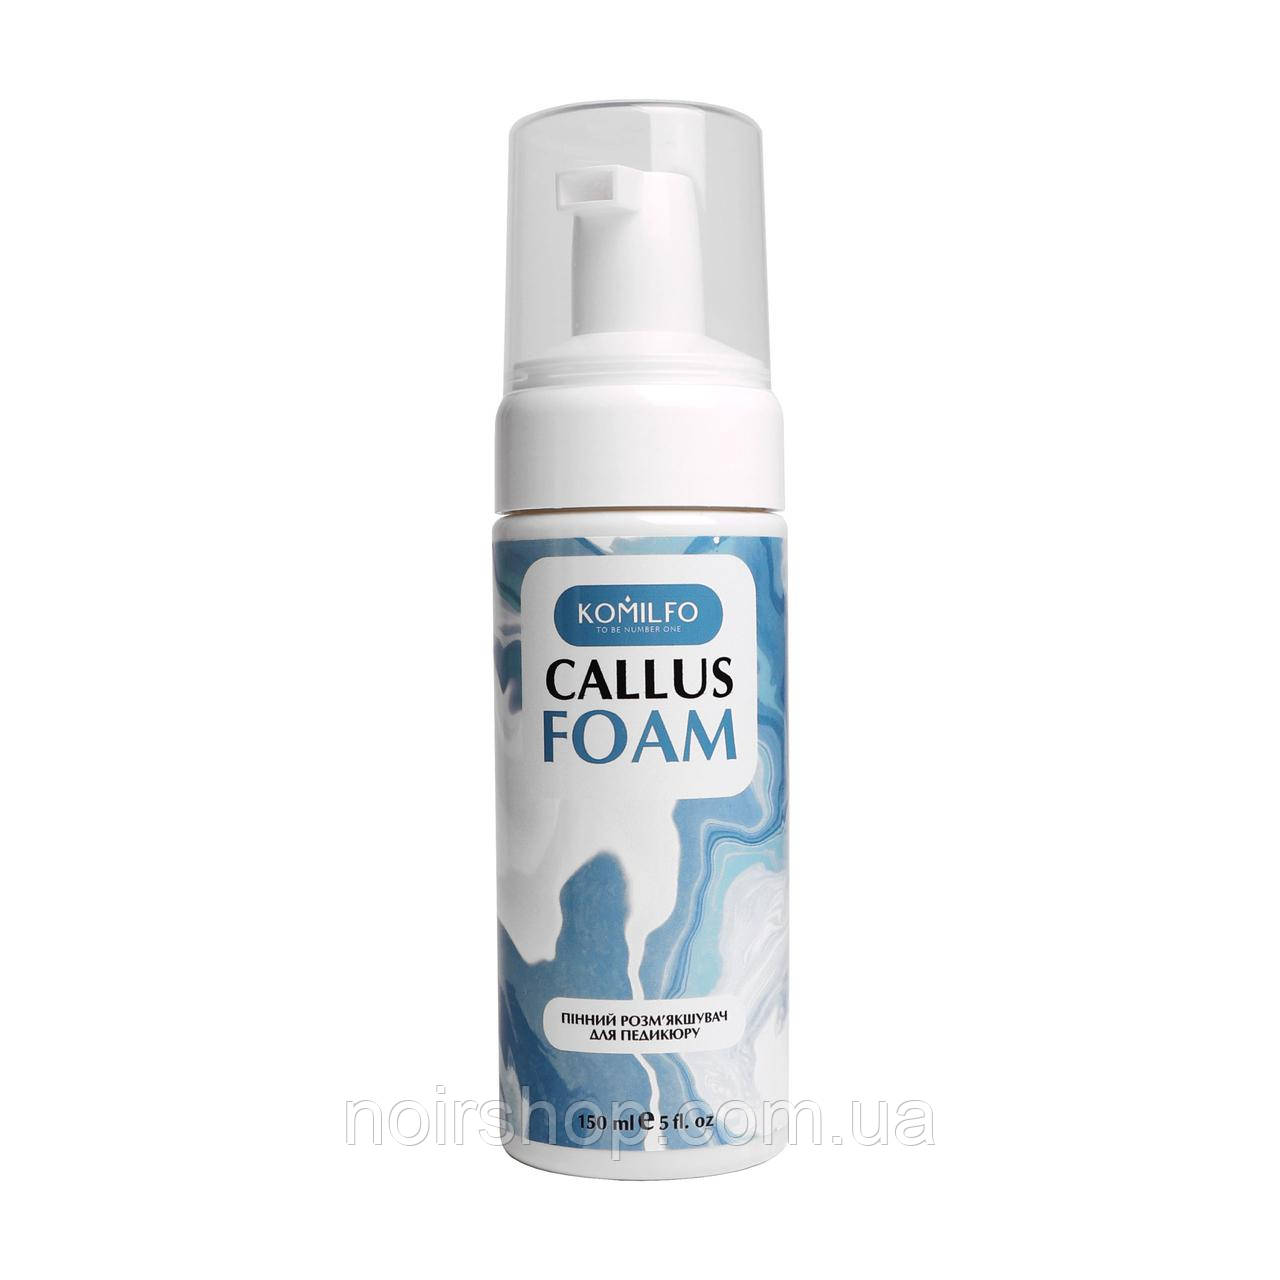 Komilfo Callus Foam — пінний кератолітик для педикюру, 150 мл